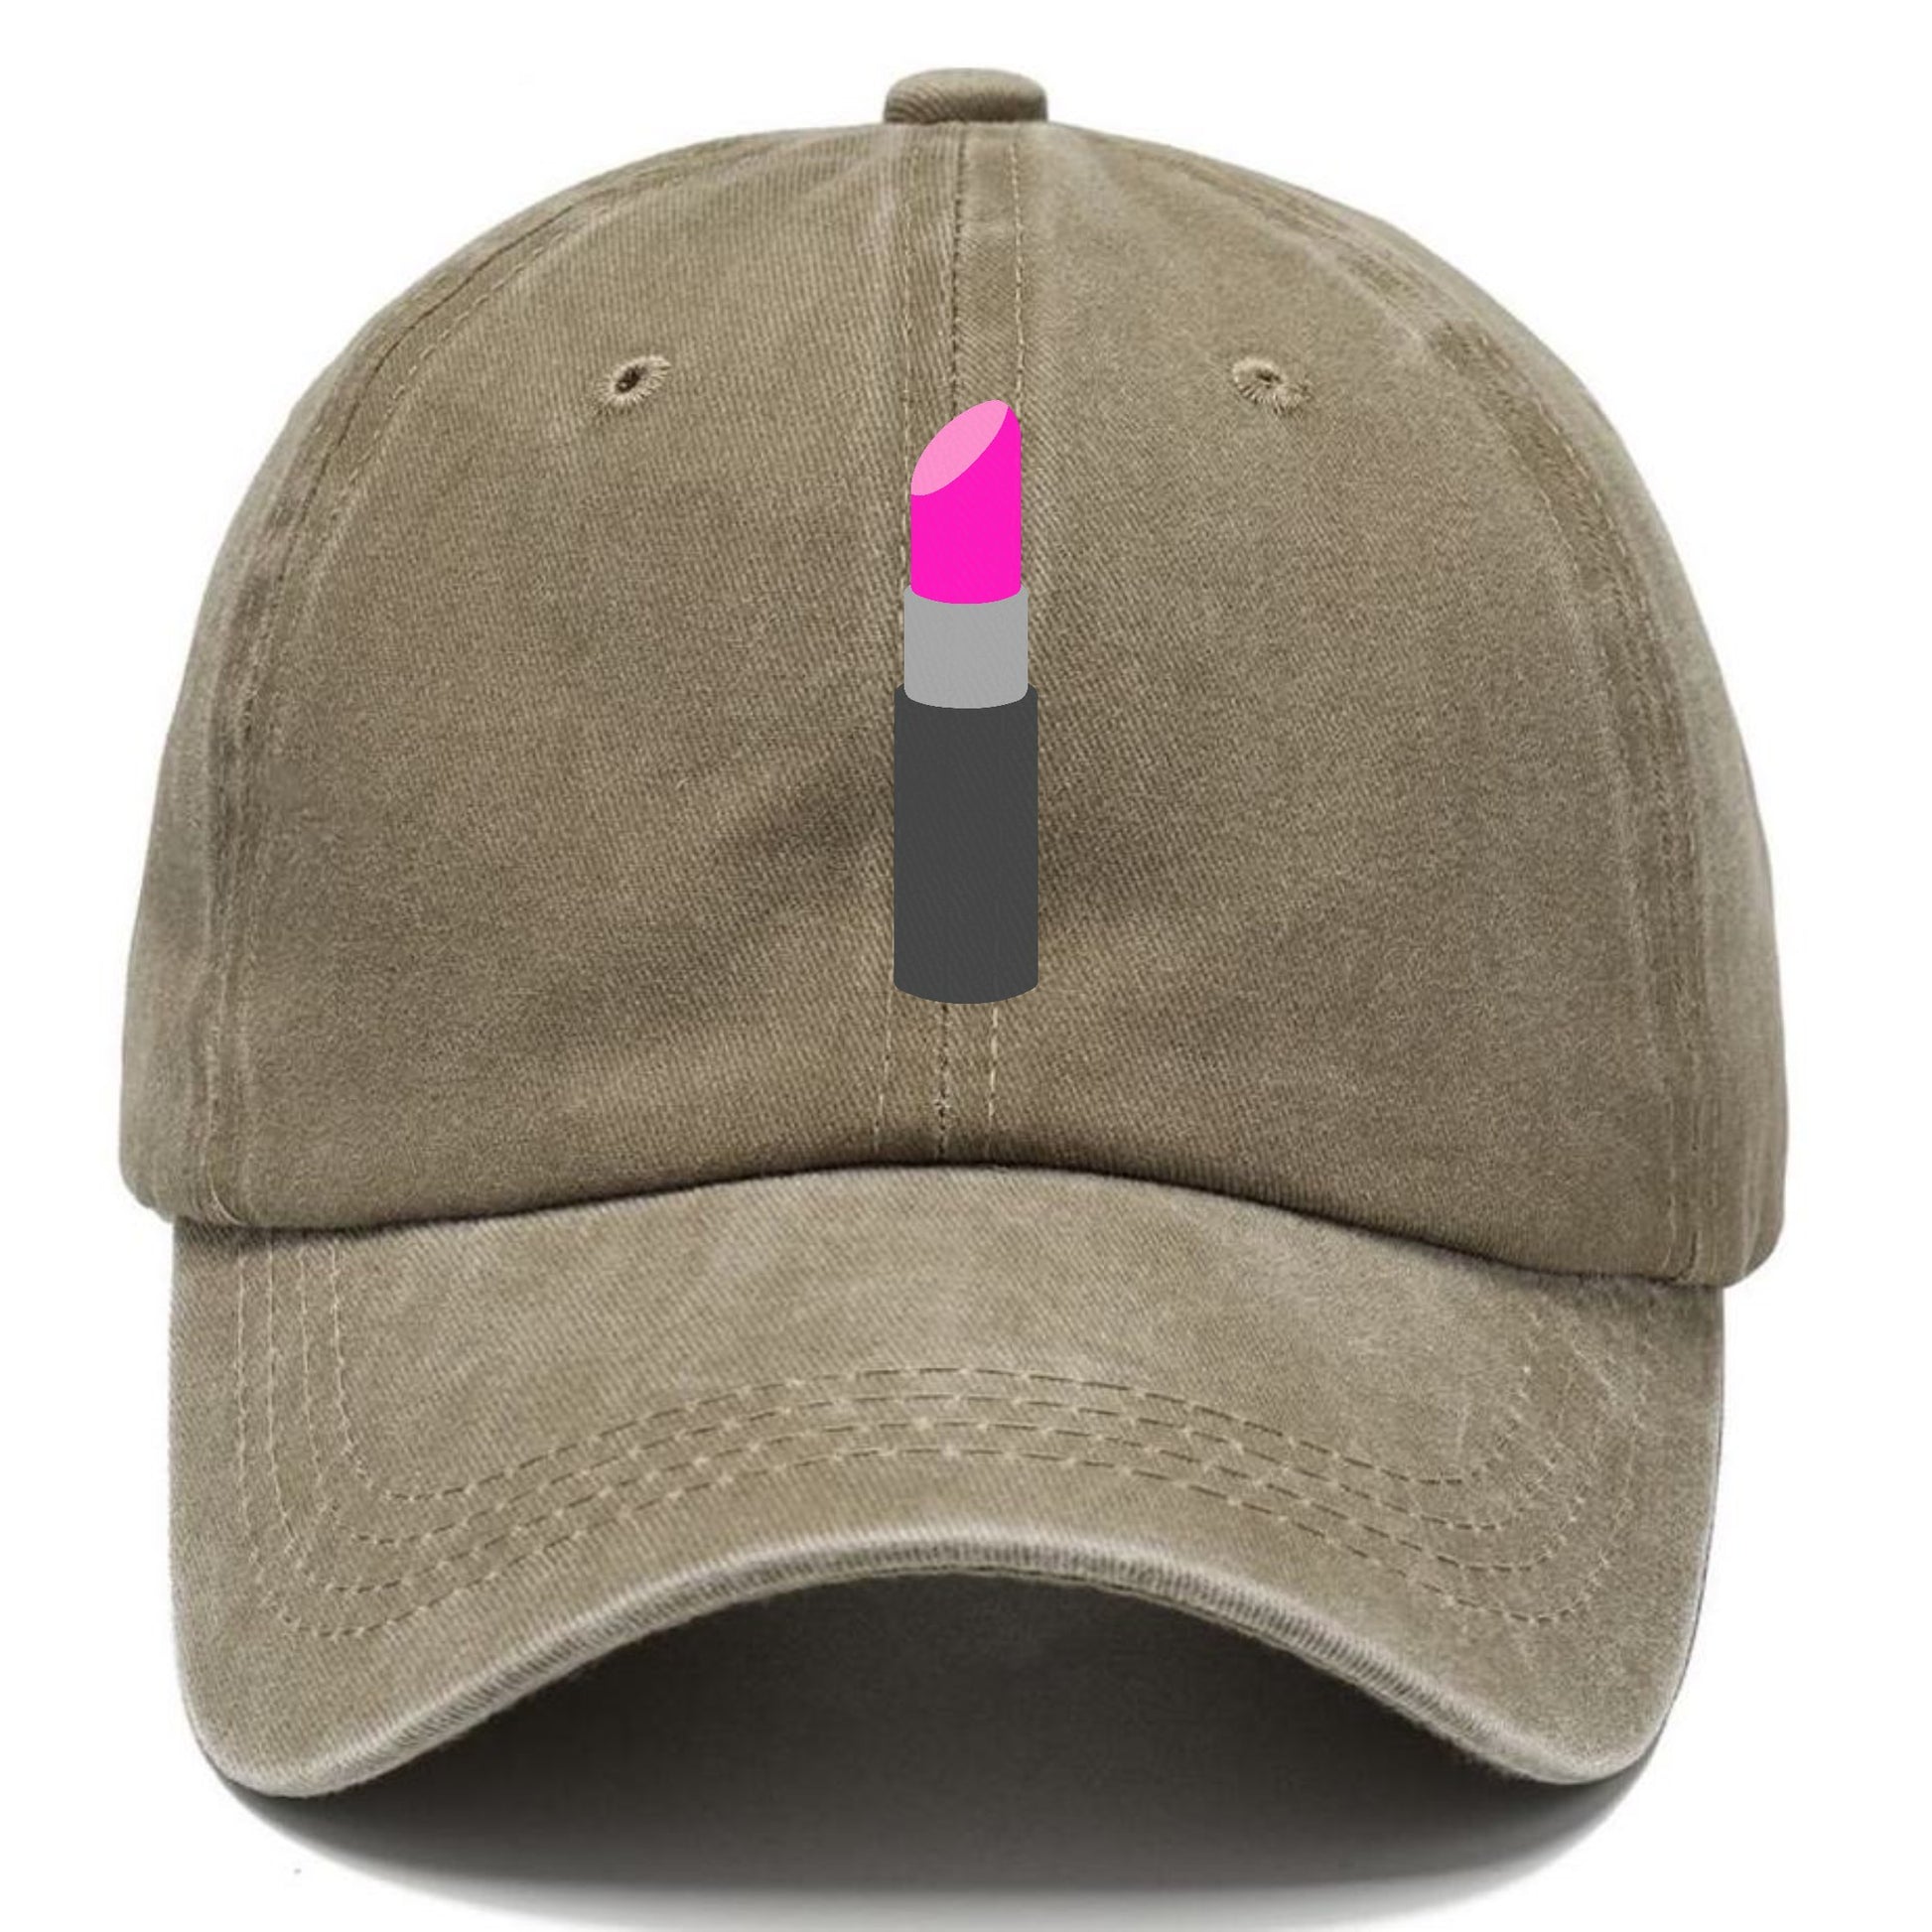 Retro 80s Lip Stick Hat